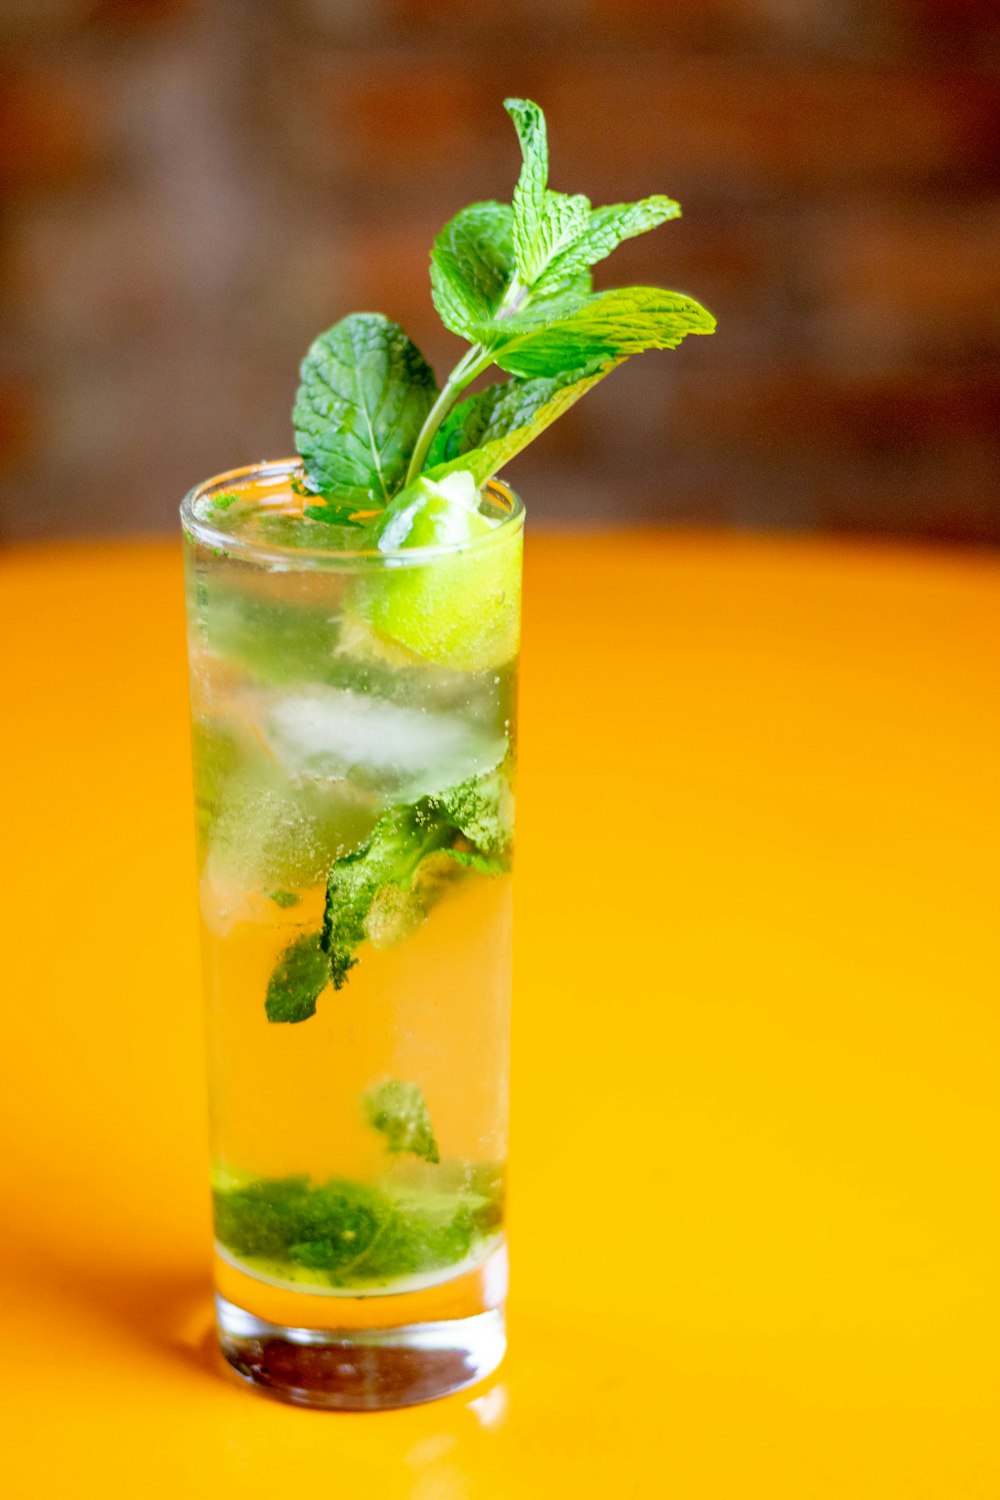 feuille verte dans un verre à boire transparent